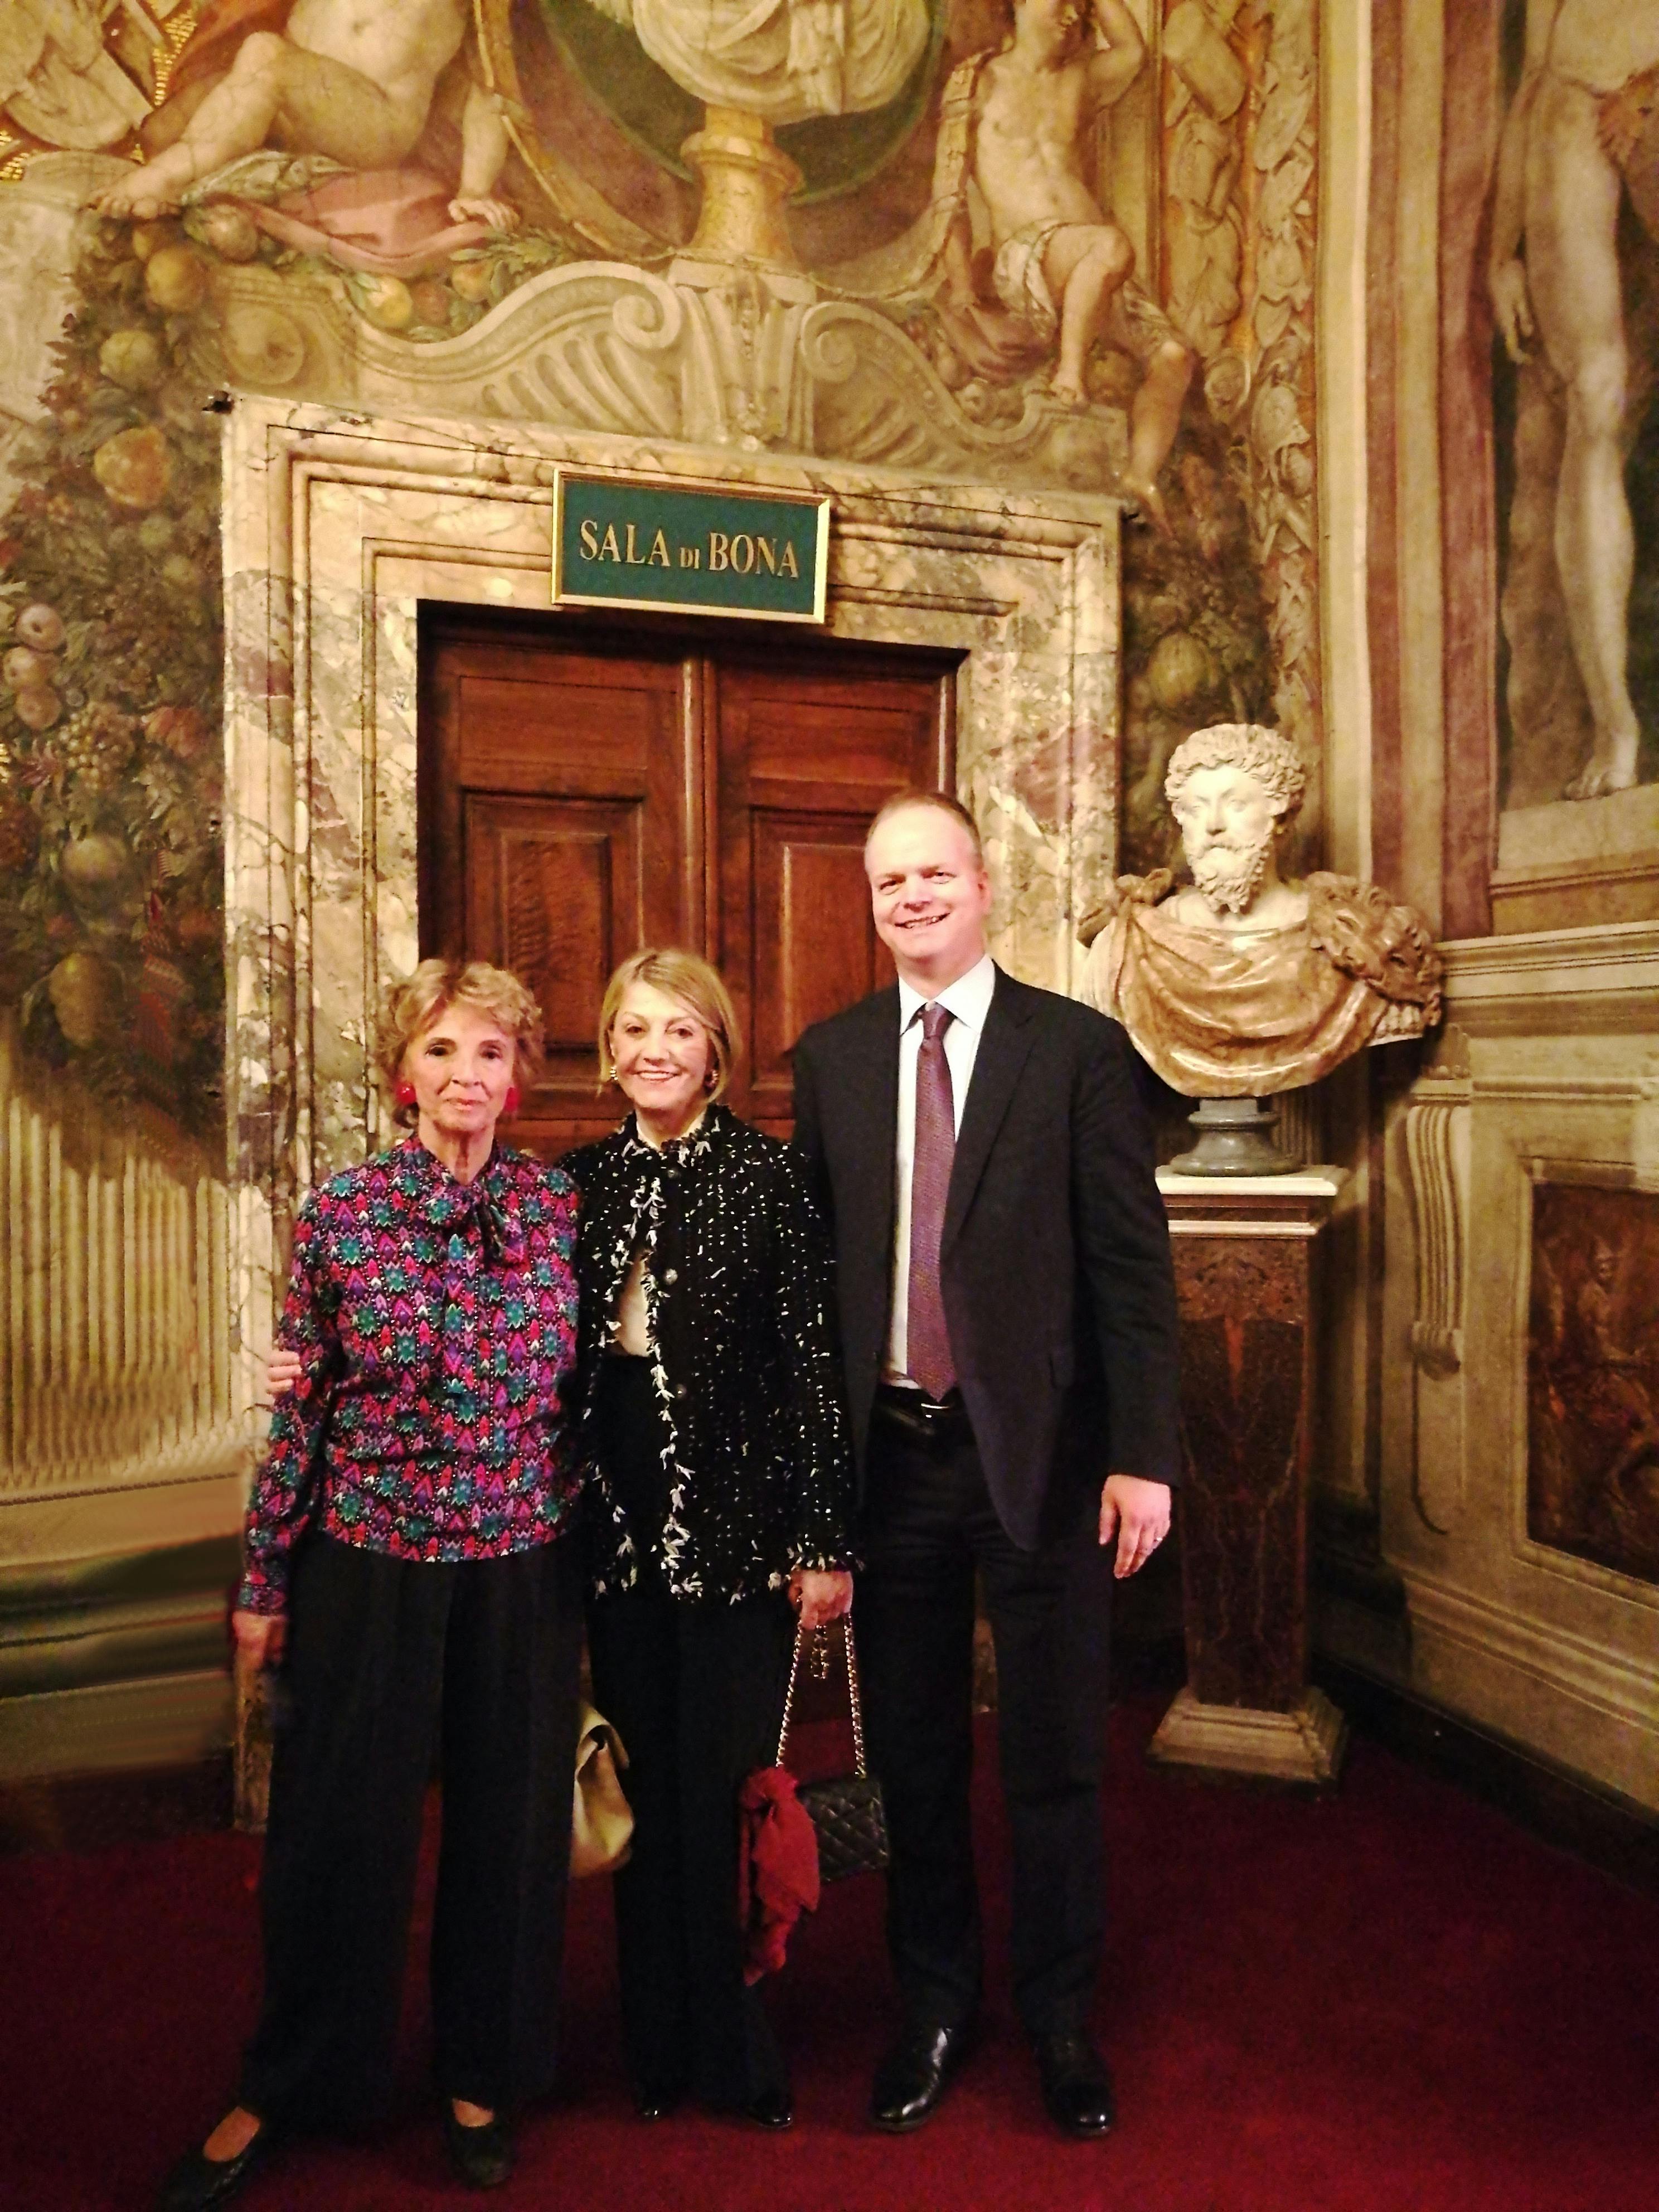 Le decorazioni della Sala di Bona a Palazzo Pitti presto restaurate